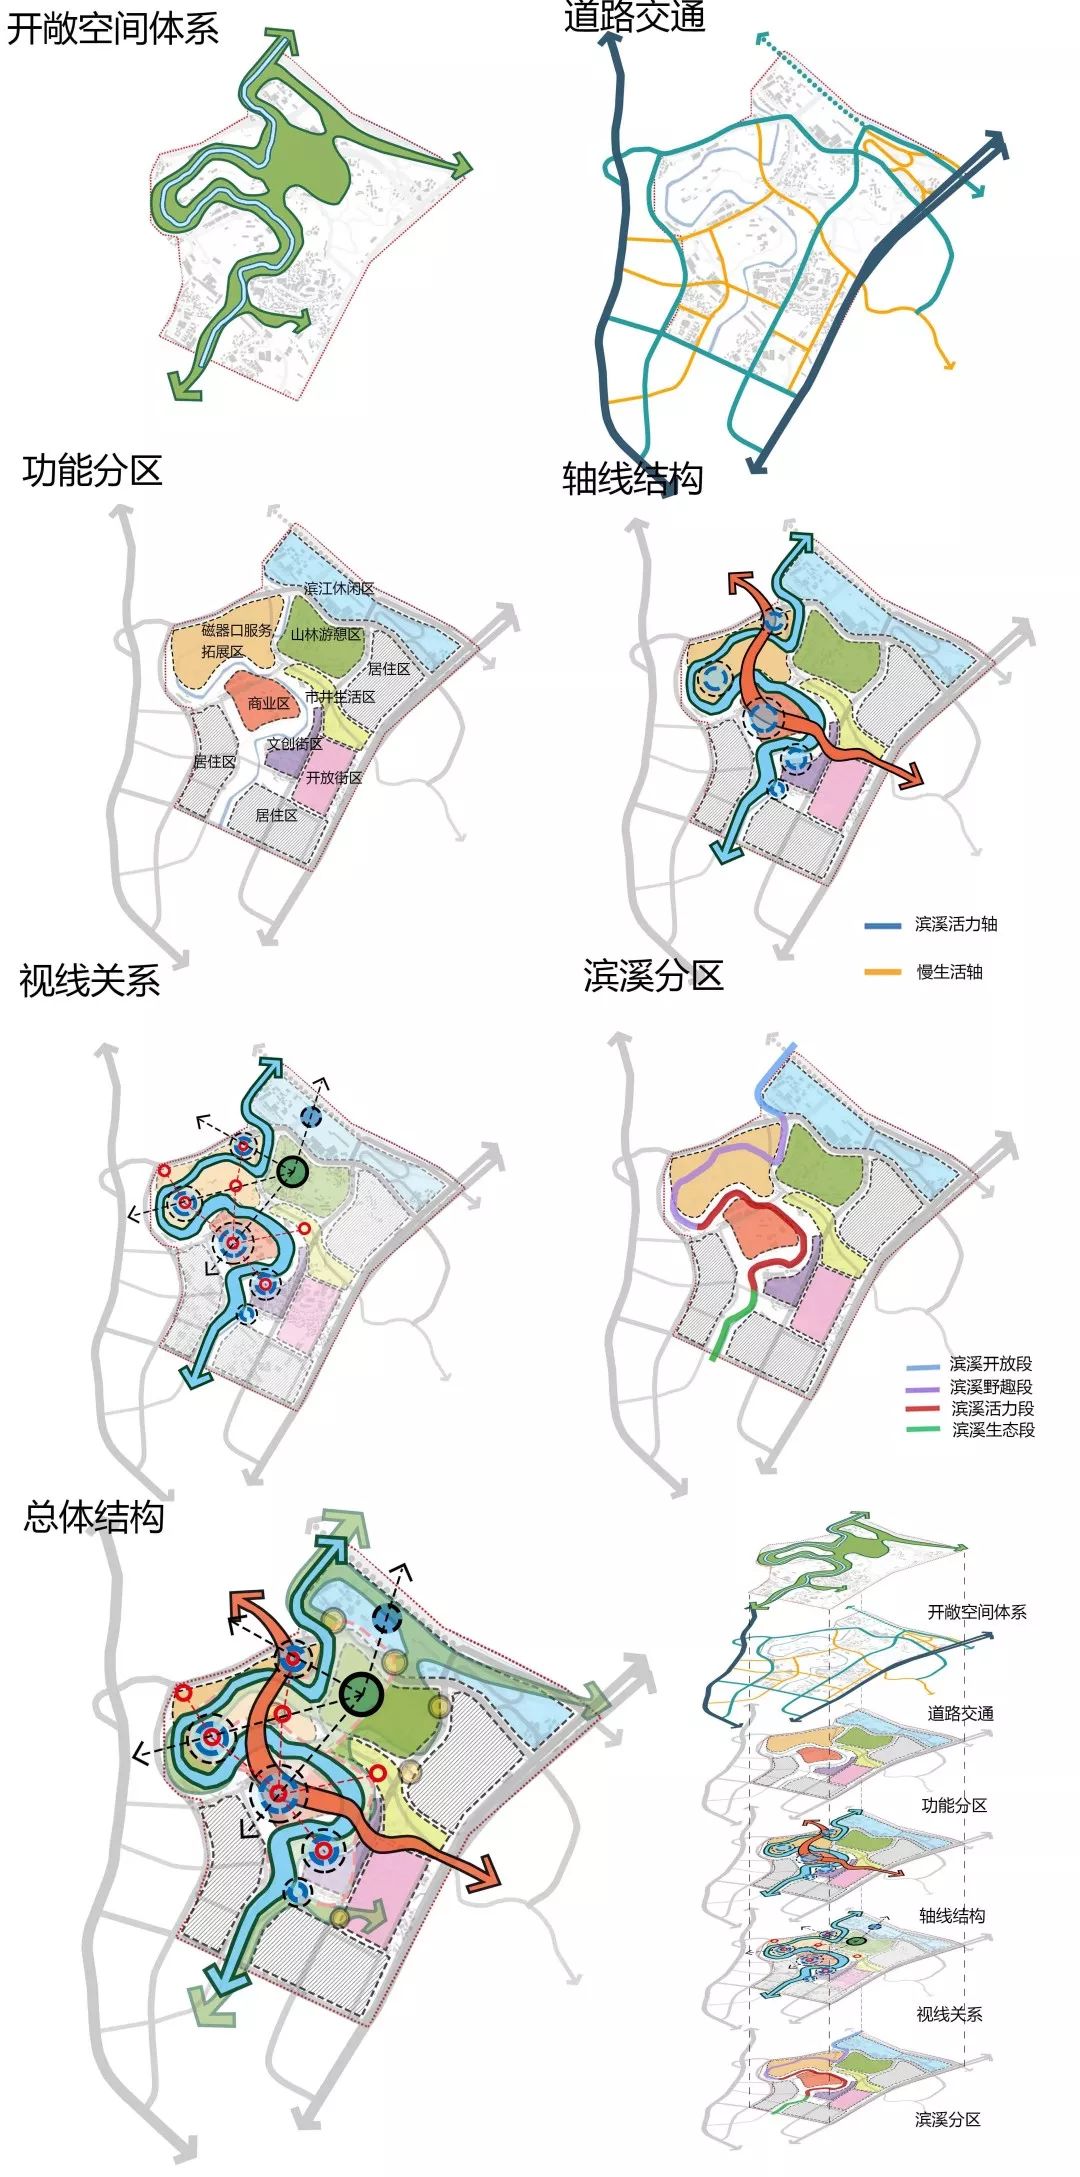 建卒课堂重庆大学建筑城规学院2015级风景园林城市设计课程作业解析